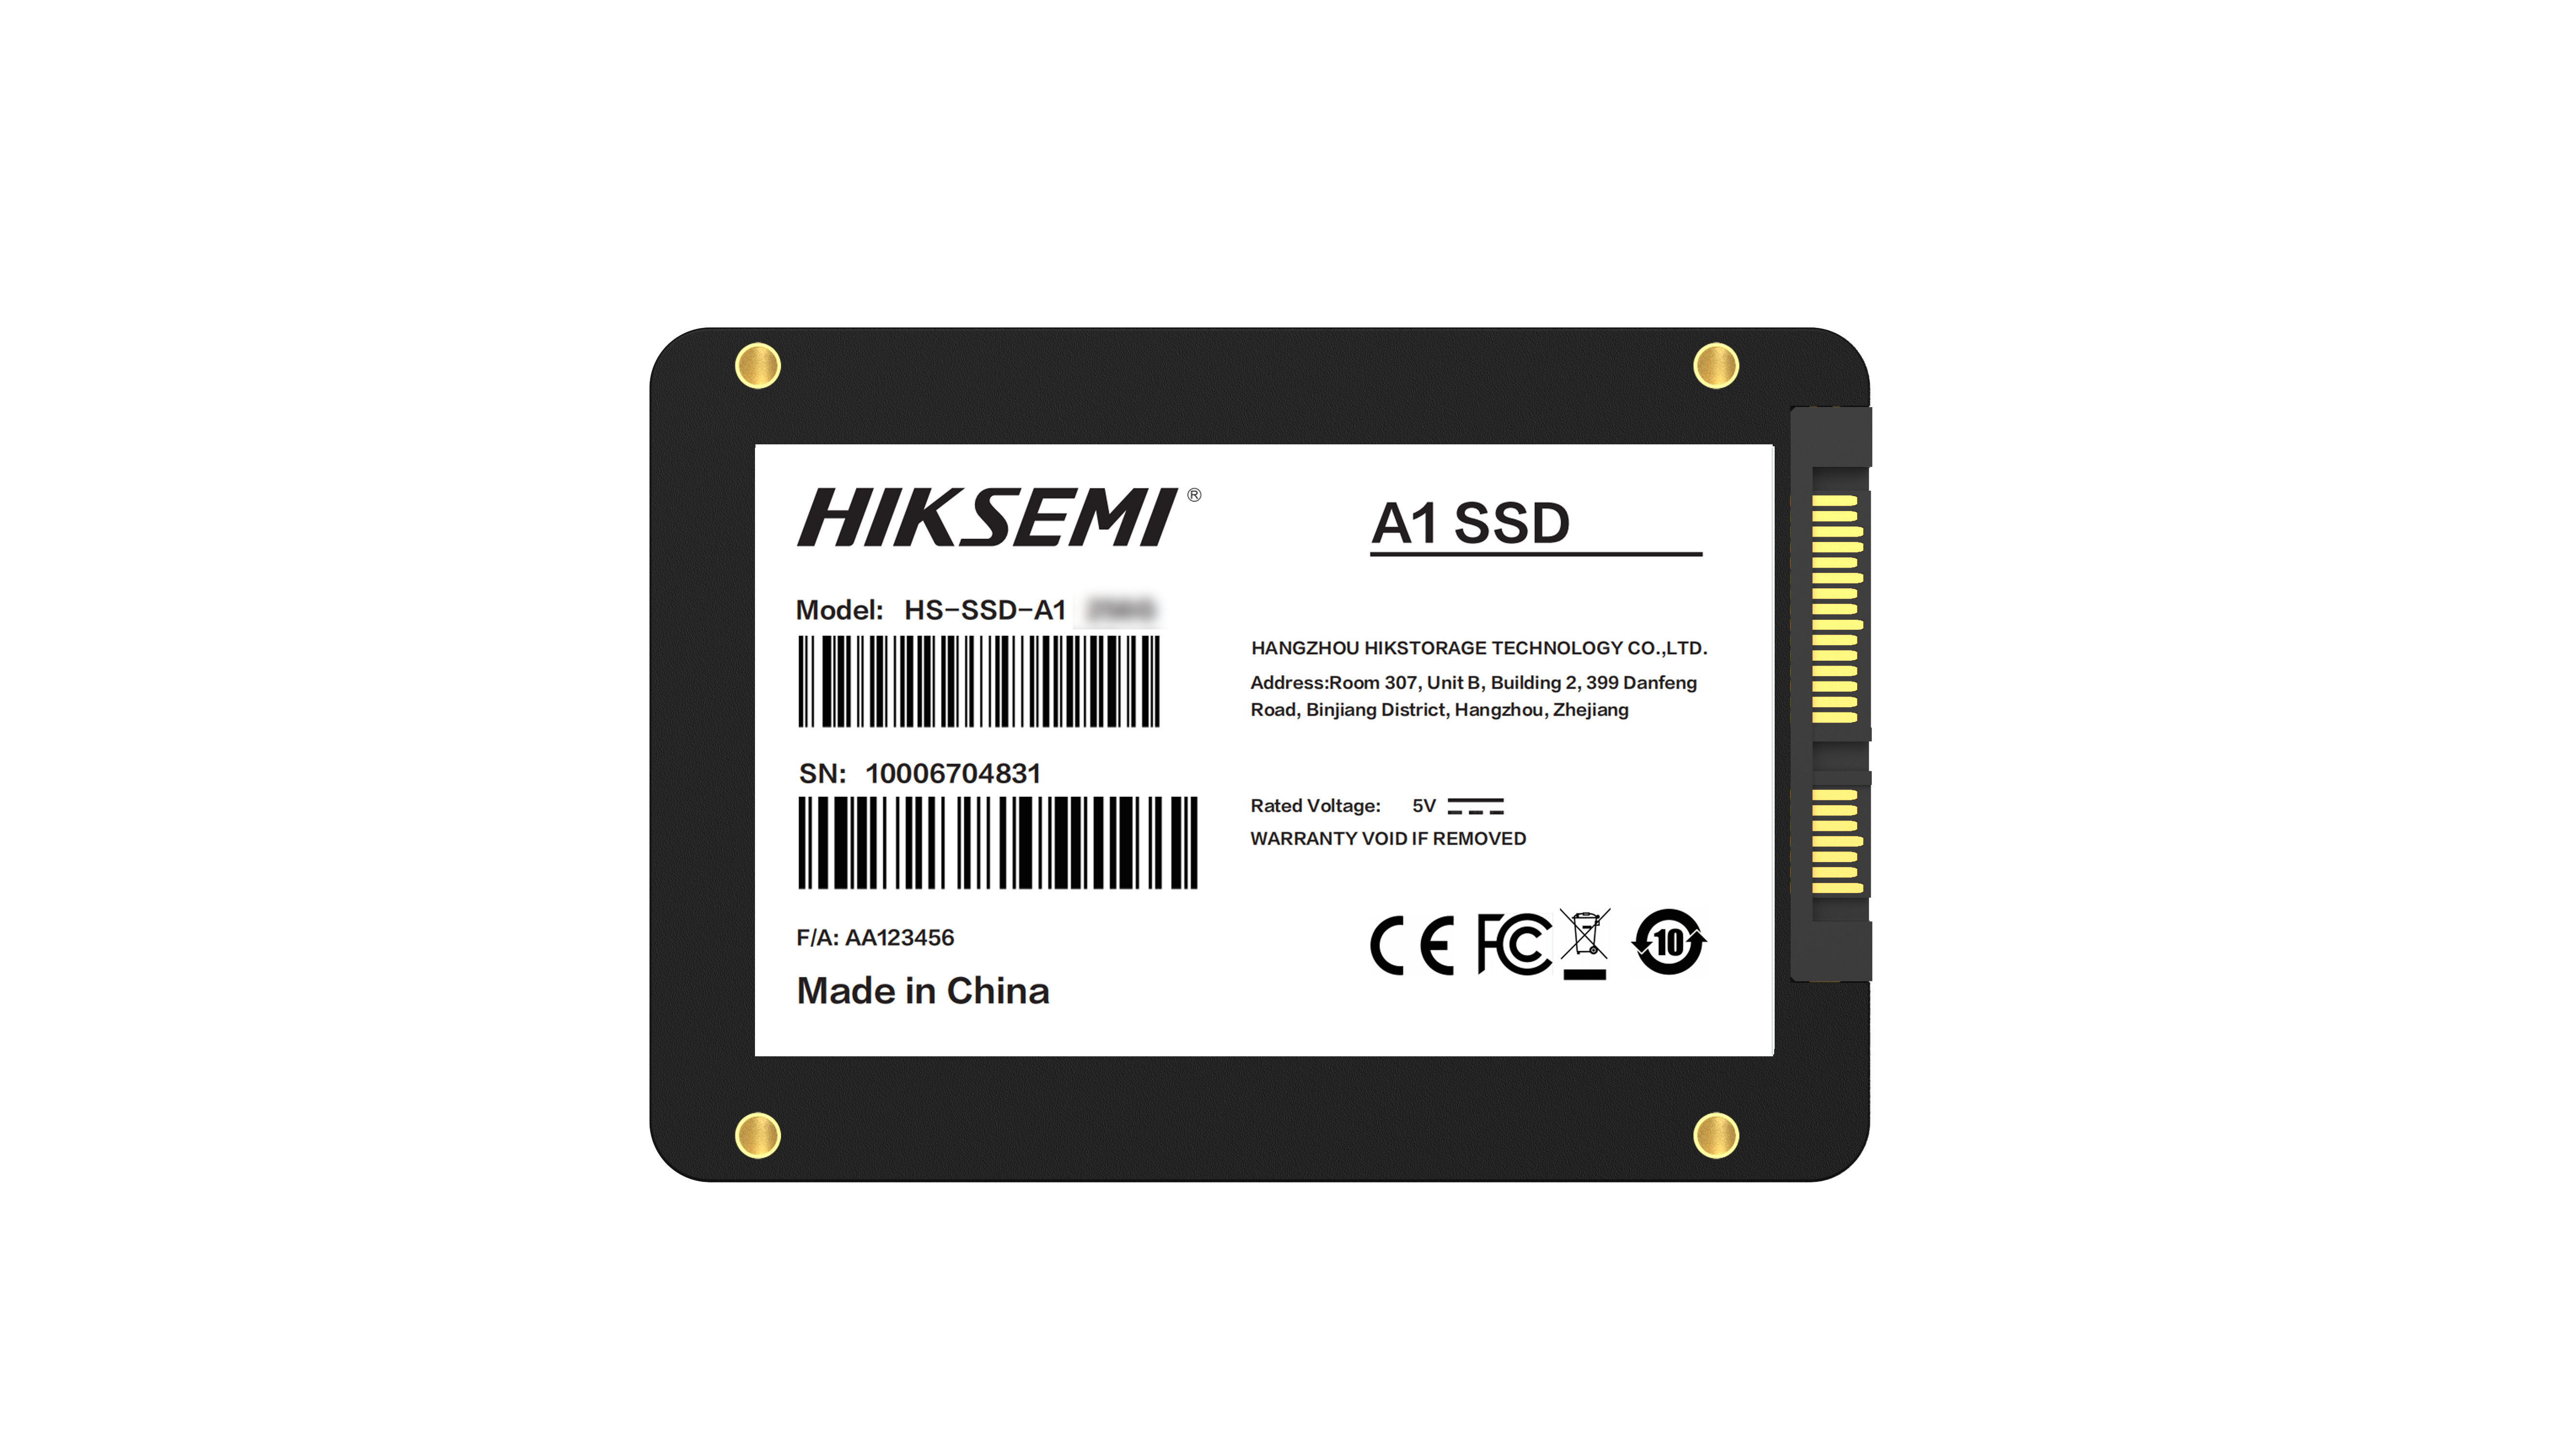 Ổ cứng SSD HIKSEMI - 120GB (Sata 2.5